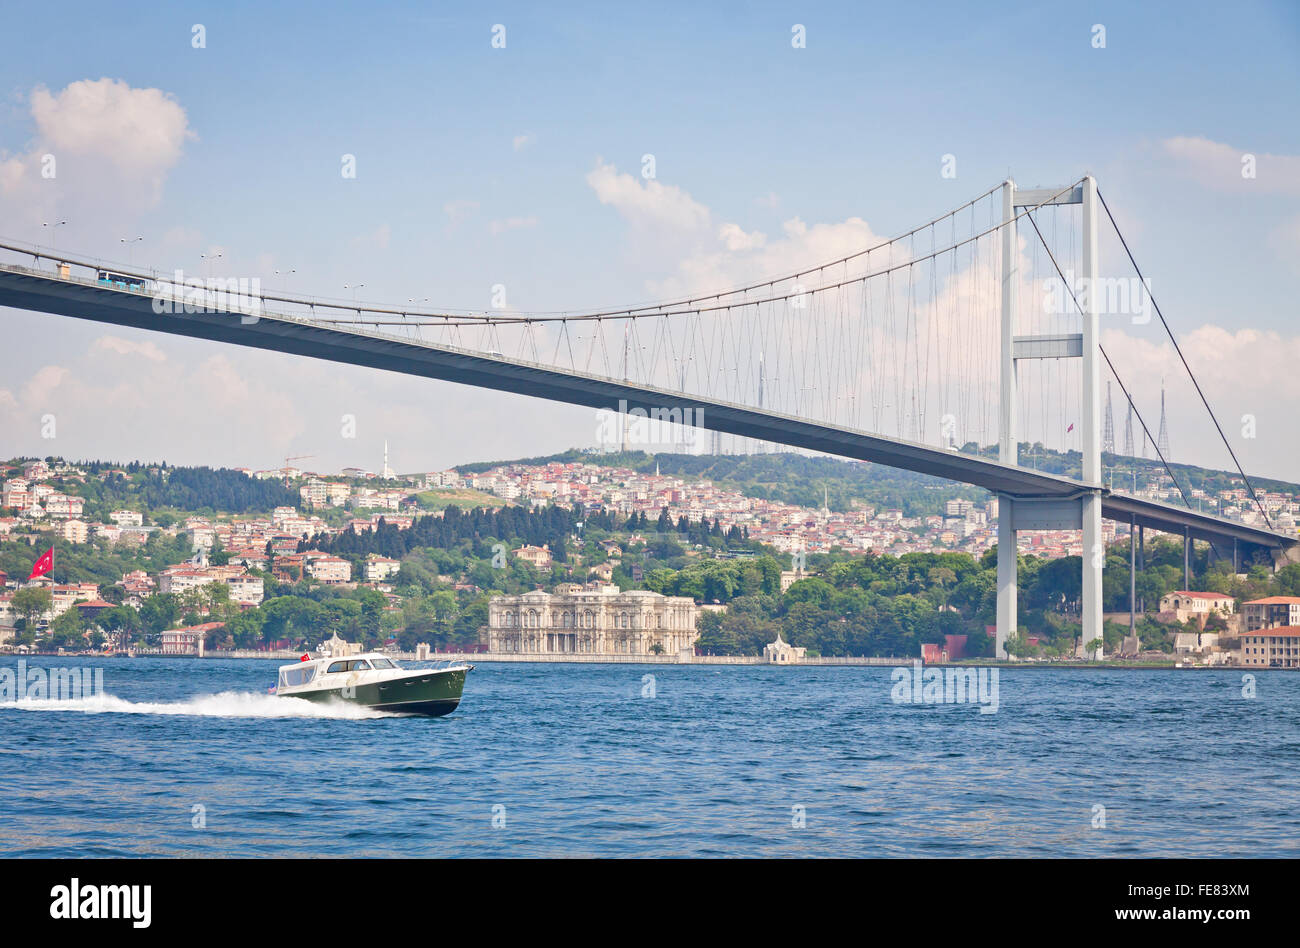 Bosporus-Brücke (auch genannt die erste Bosporus-Brücke) über den Bosporus in Istanbul, Türkei Stockfoto